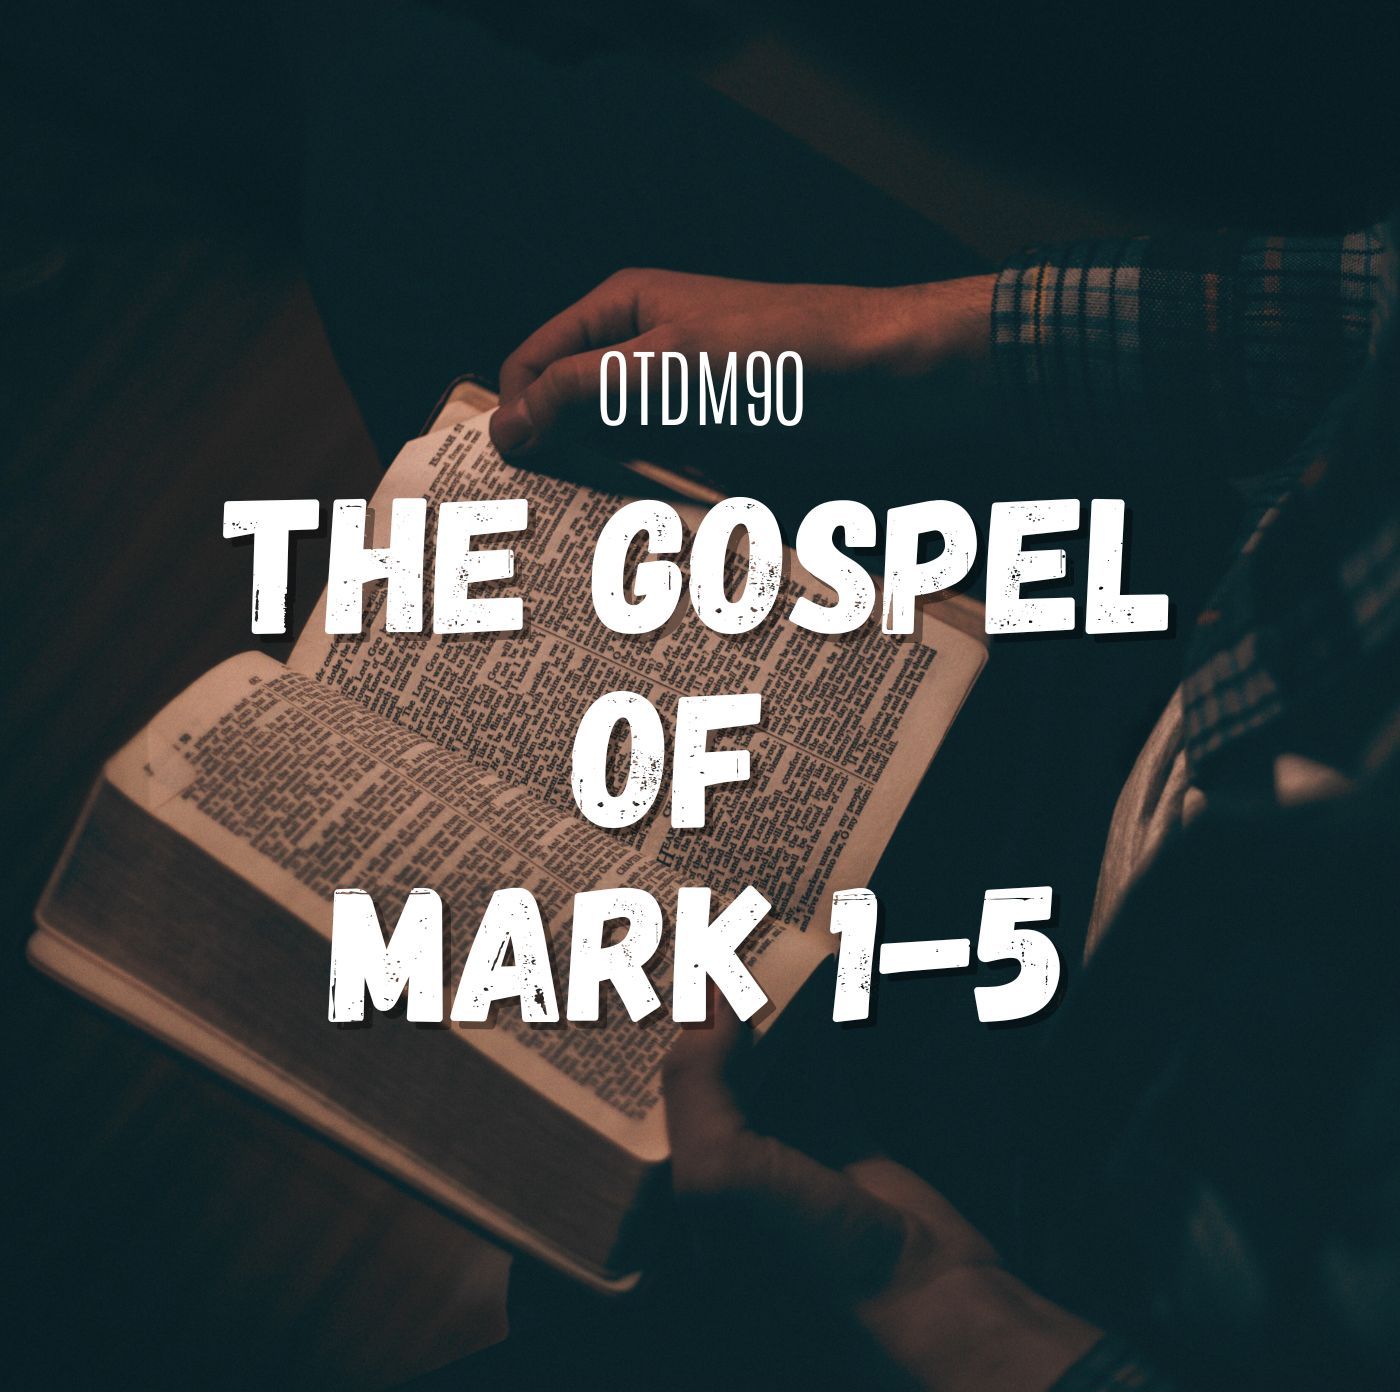 OTDM90 The Gospel of Mark 1-5